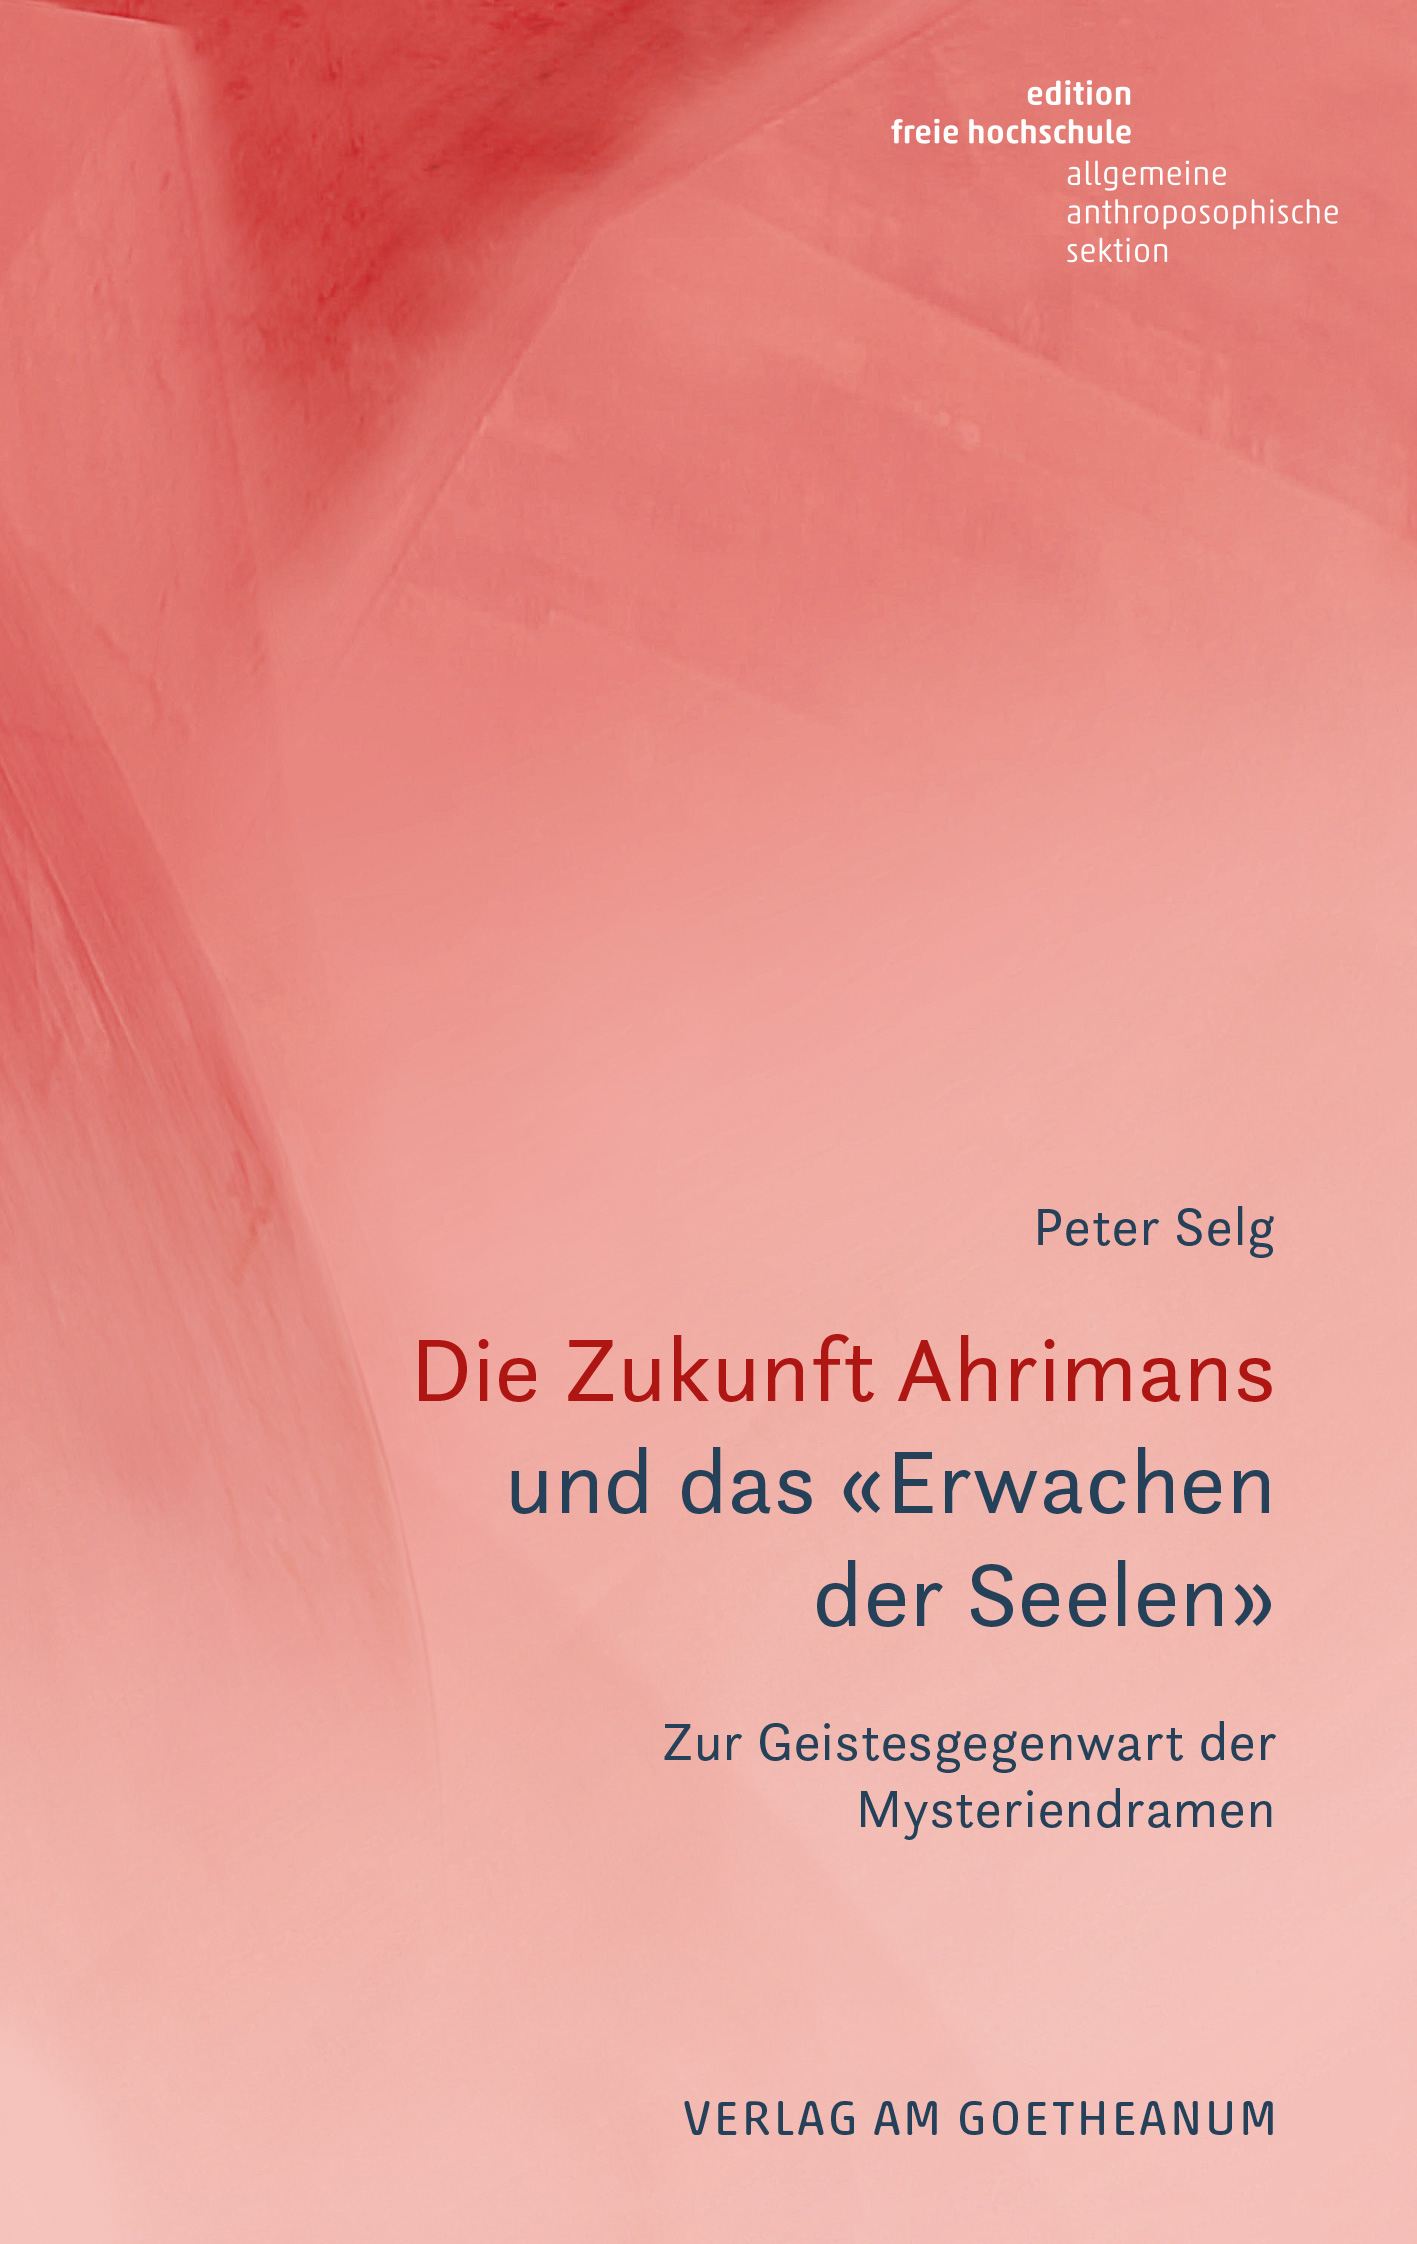 Verlag am Goetheanum-Peter Selg-Die Zukunft Ahrimans